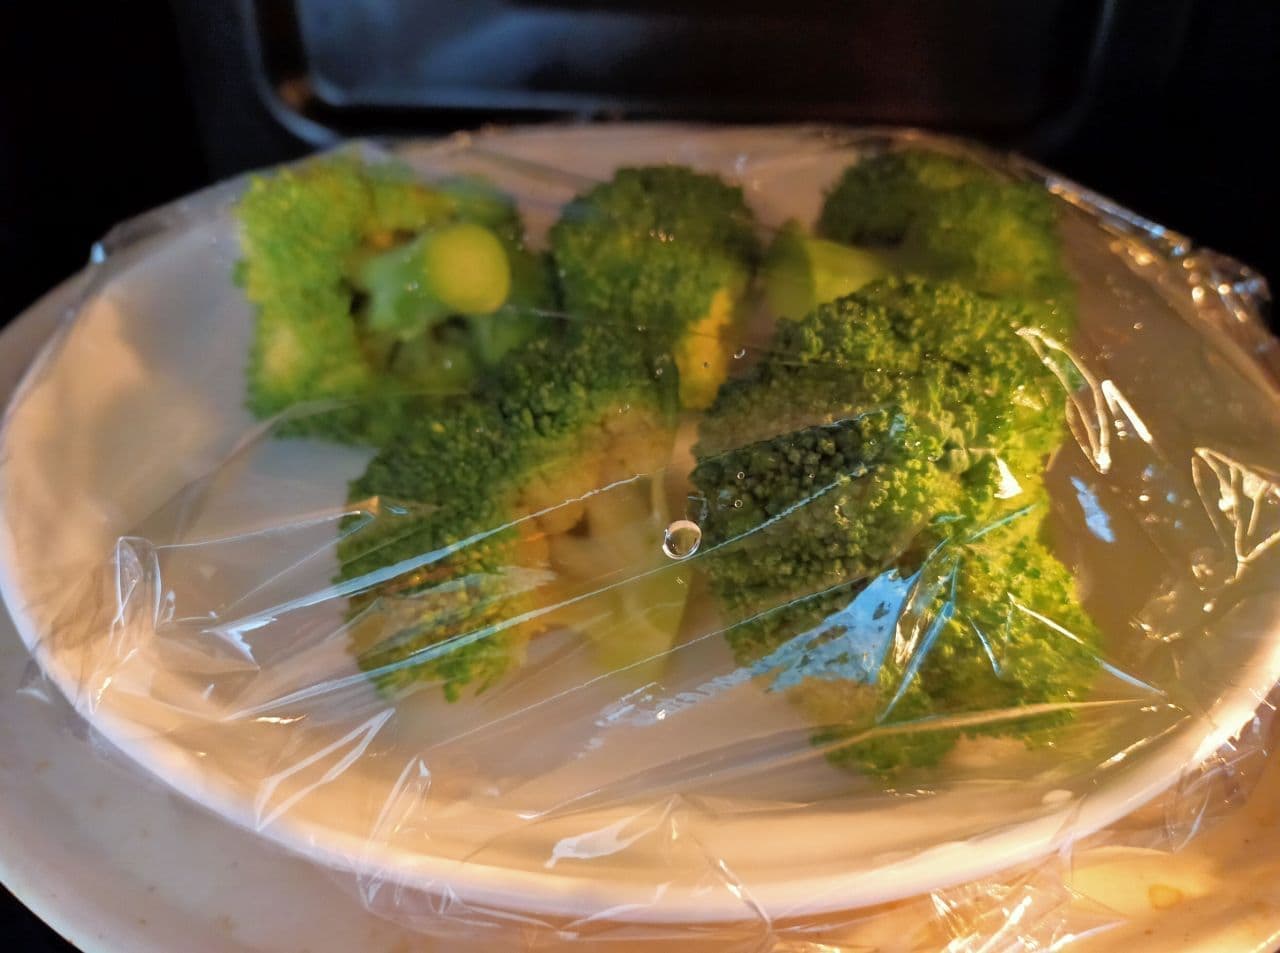 Recipe for "Broccoli and Tofu Namul